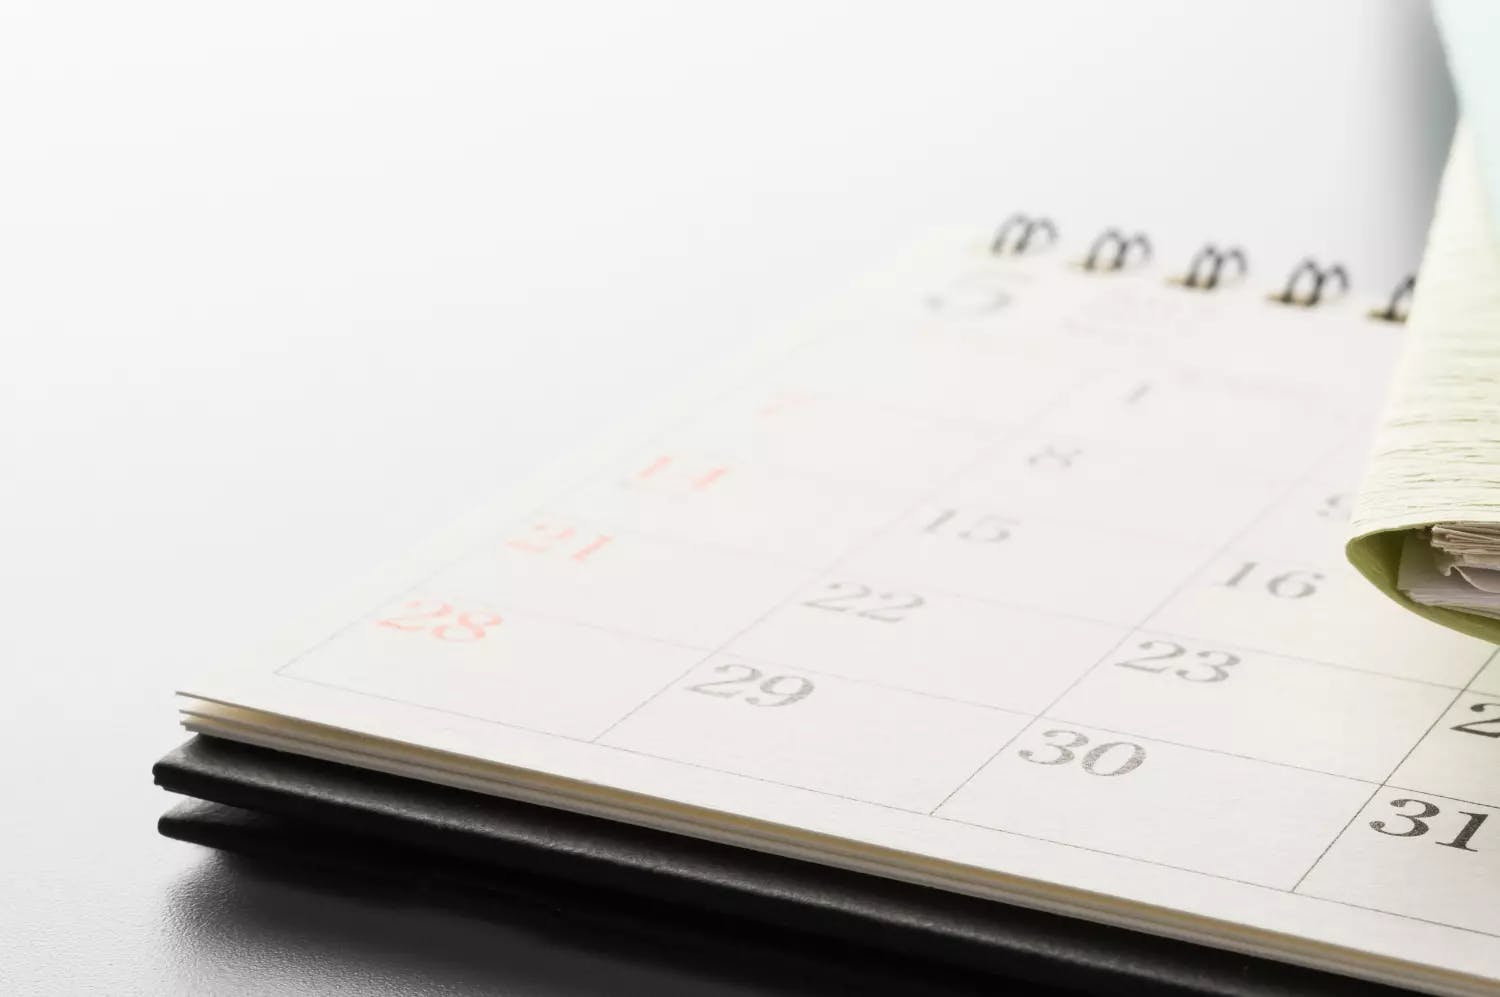 En kalender, der viser deadlines for vigtige ansøgningsfrister i marts